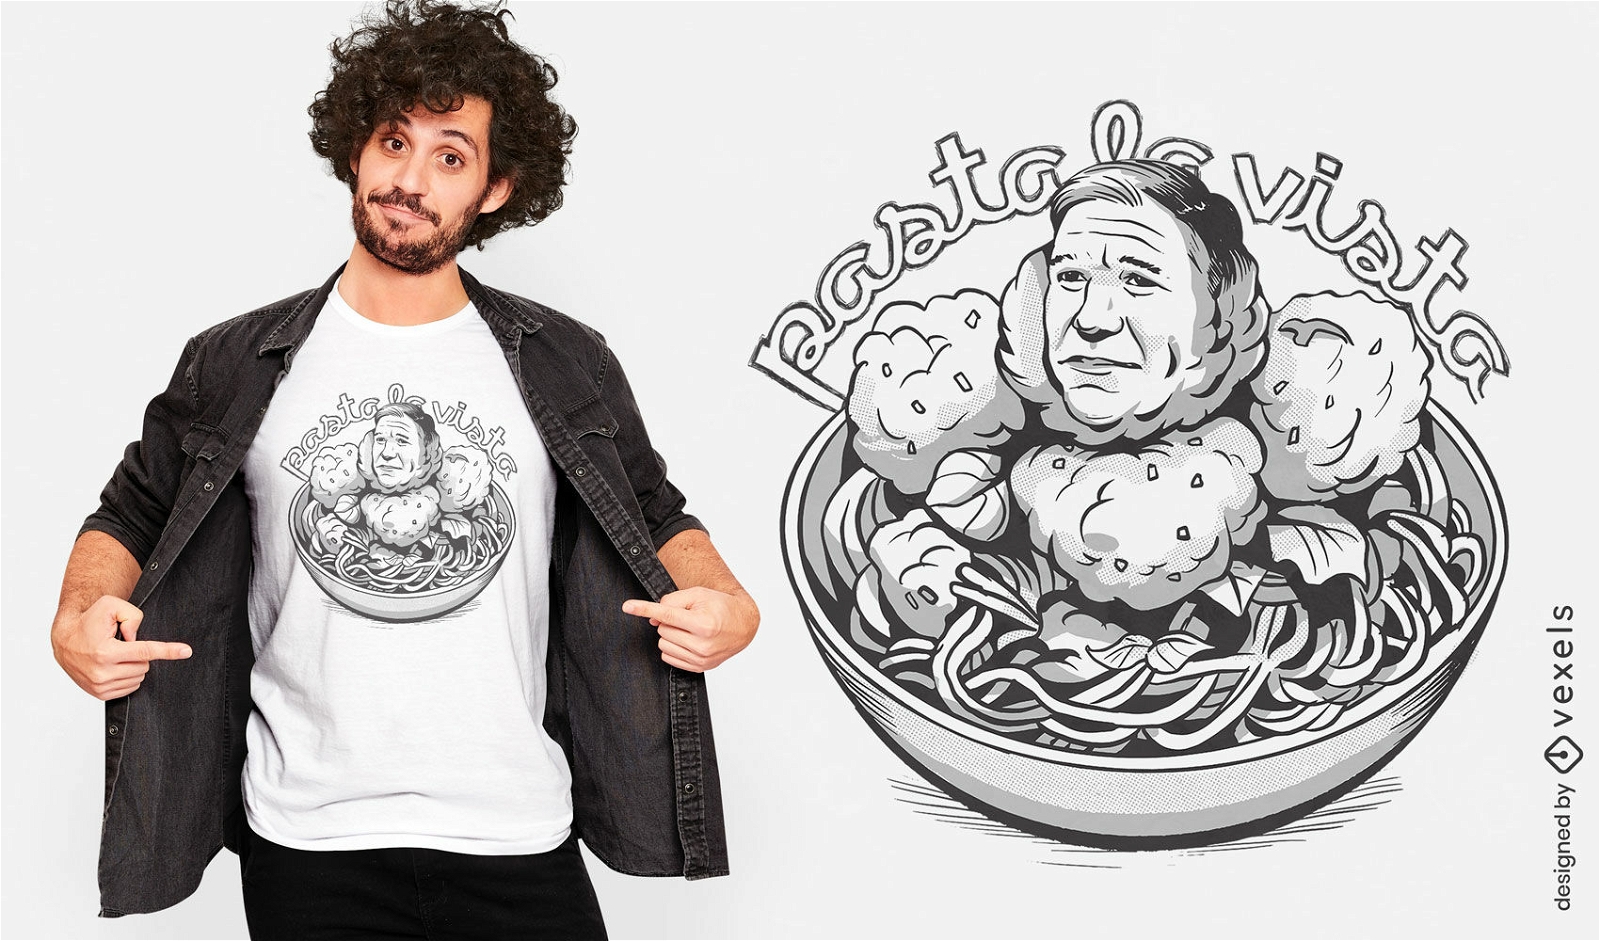 Satirical political spaghetti t-shirt design